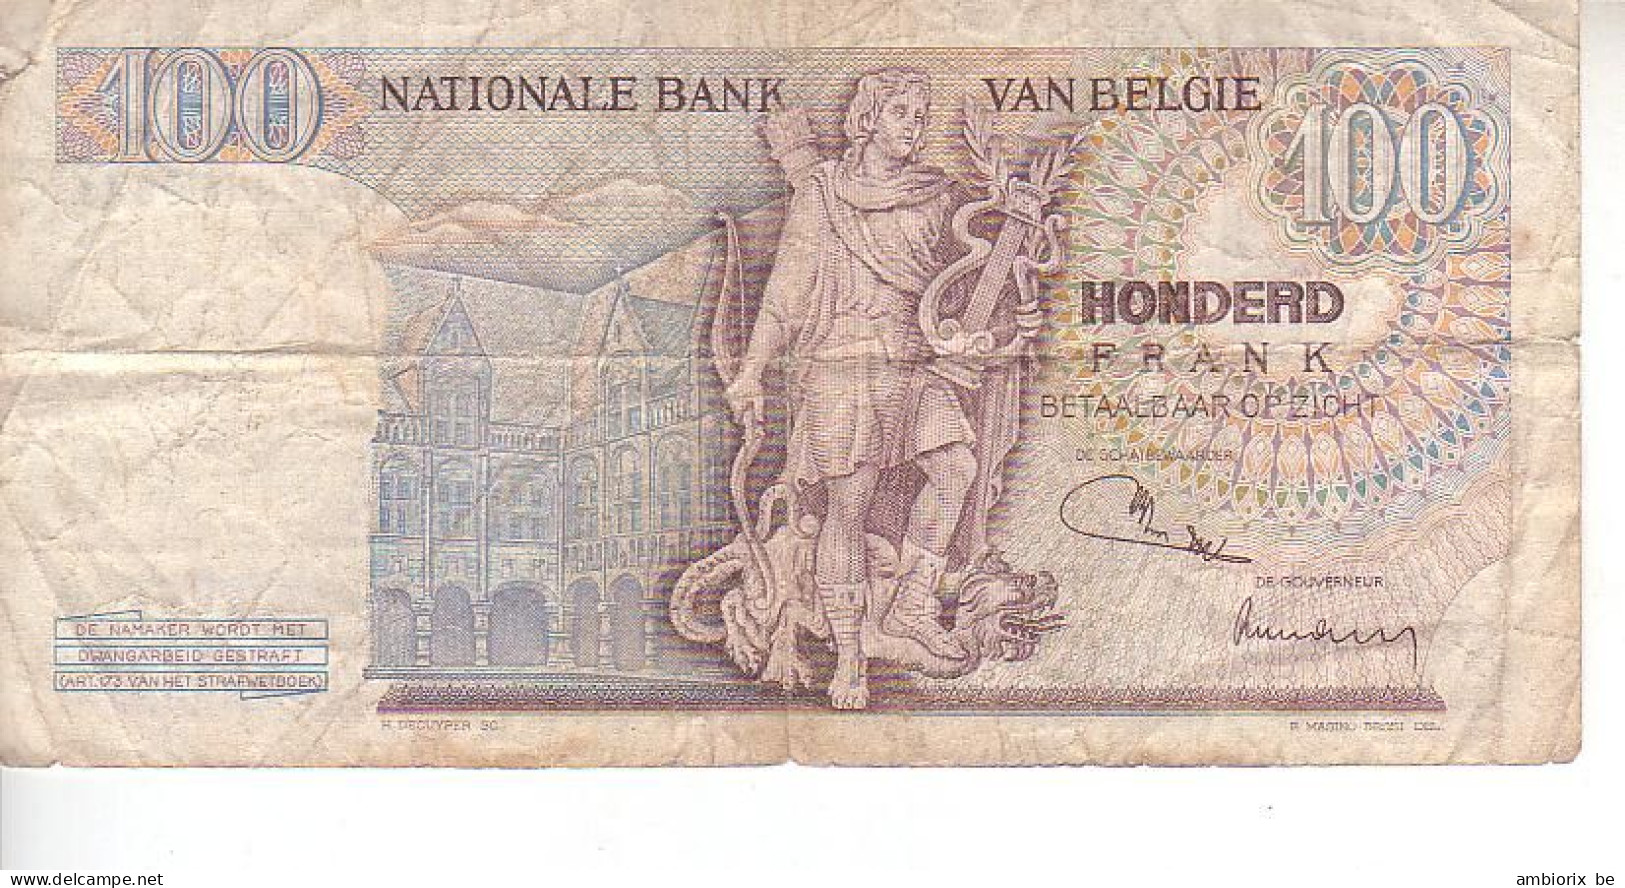 Belgique - Billet 67 C 20.07.71 - 100 Francs